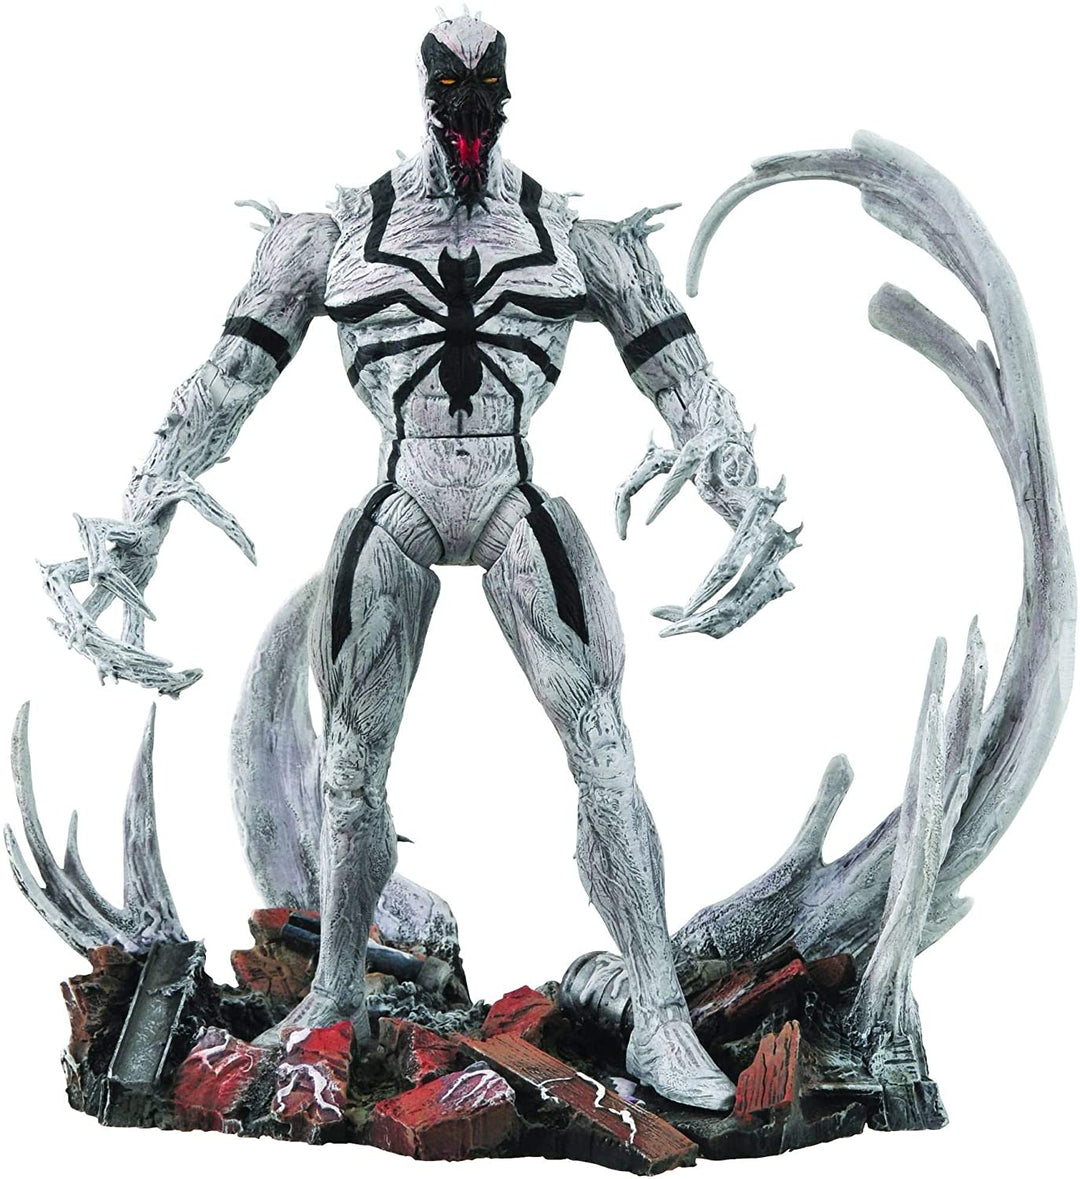 Marvel Select Anti Venom Special Collector Edition-actiefiguur